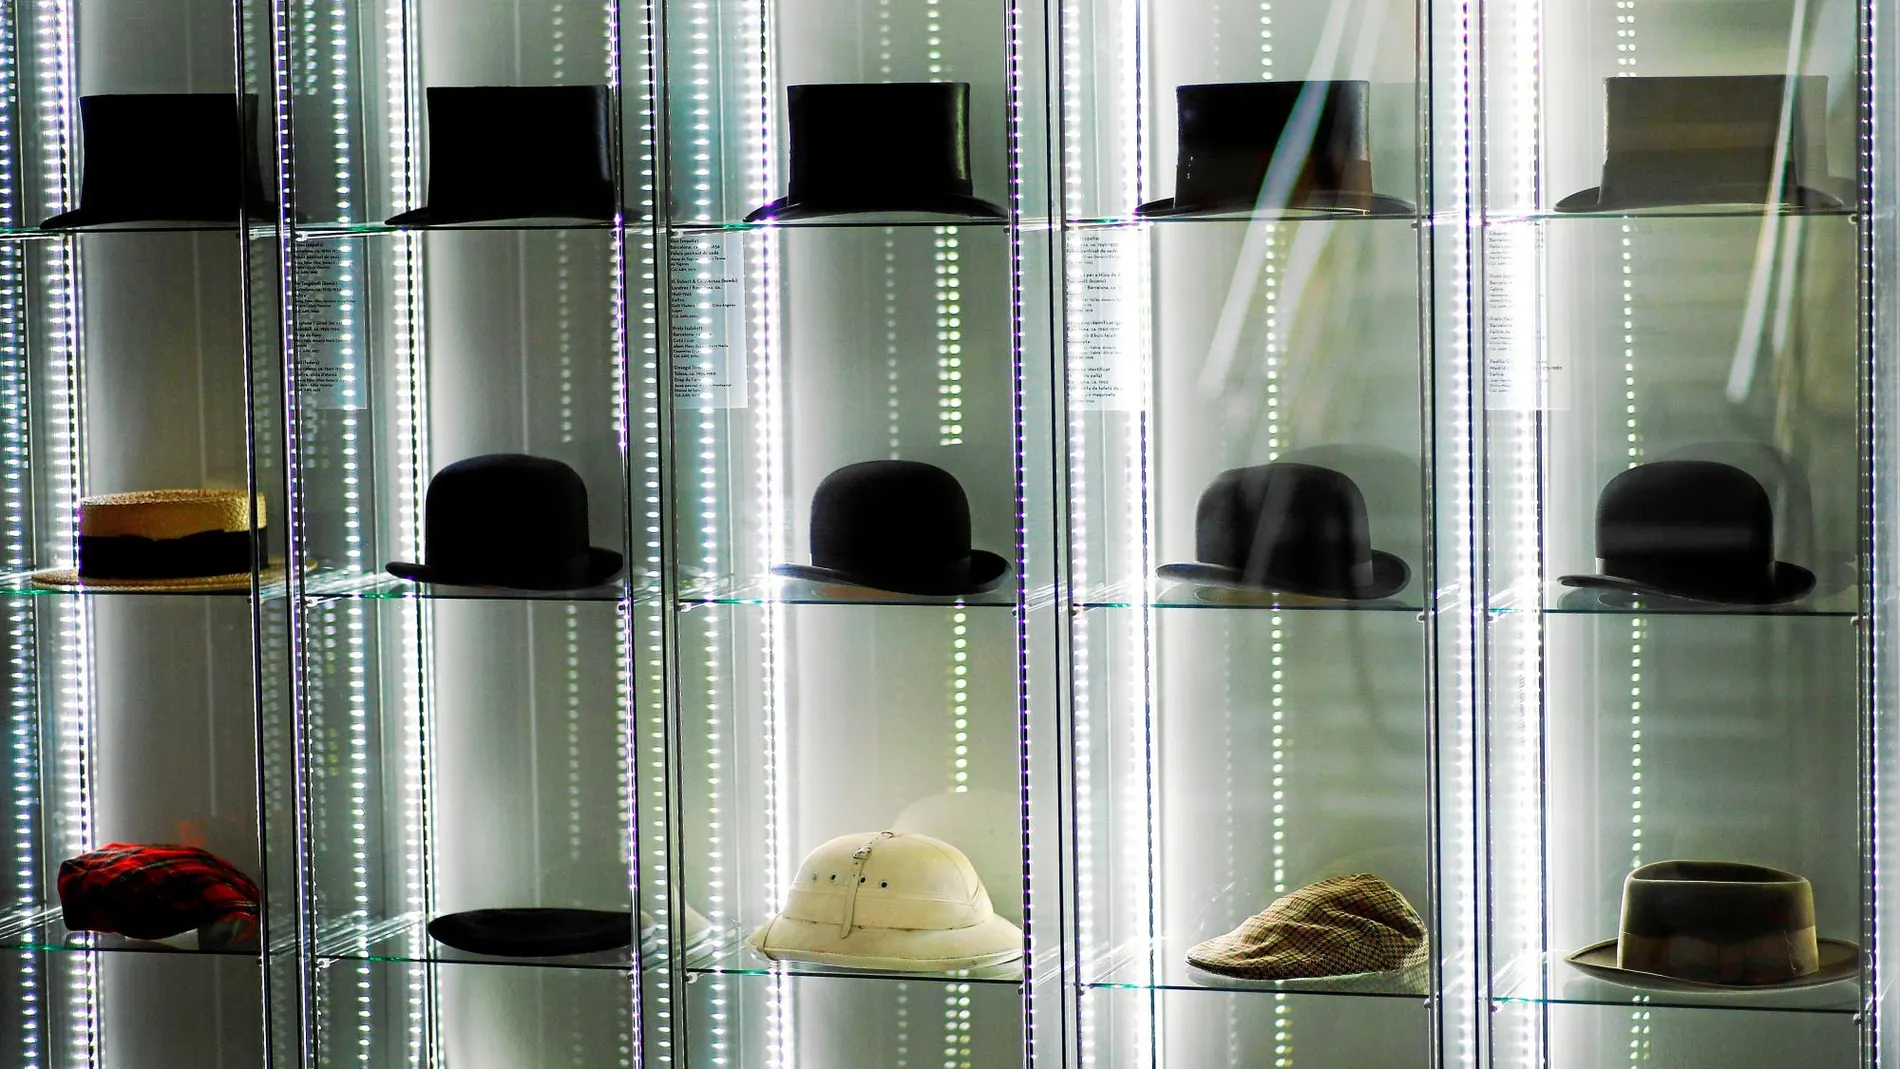 Los sombreros son el eje principal de esta exposición que se puede visitar en Caldes d'Estrac y, con este original pretexto se pueden ver obras de algunos de los artistas más brillantes de las últimas décadas